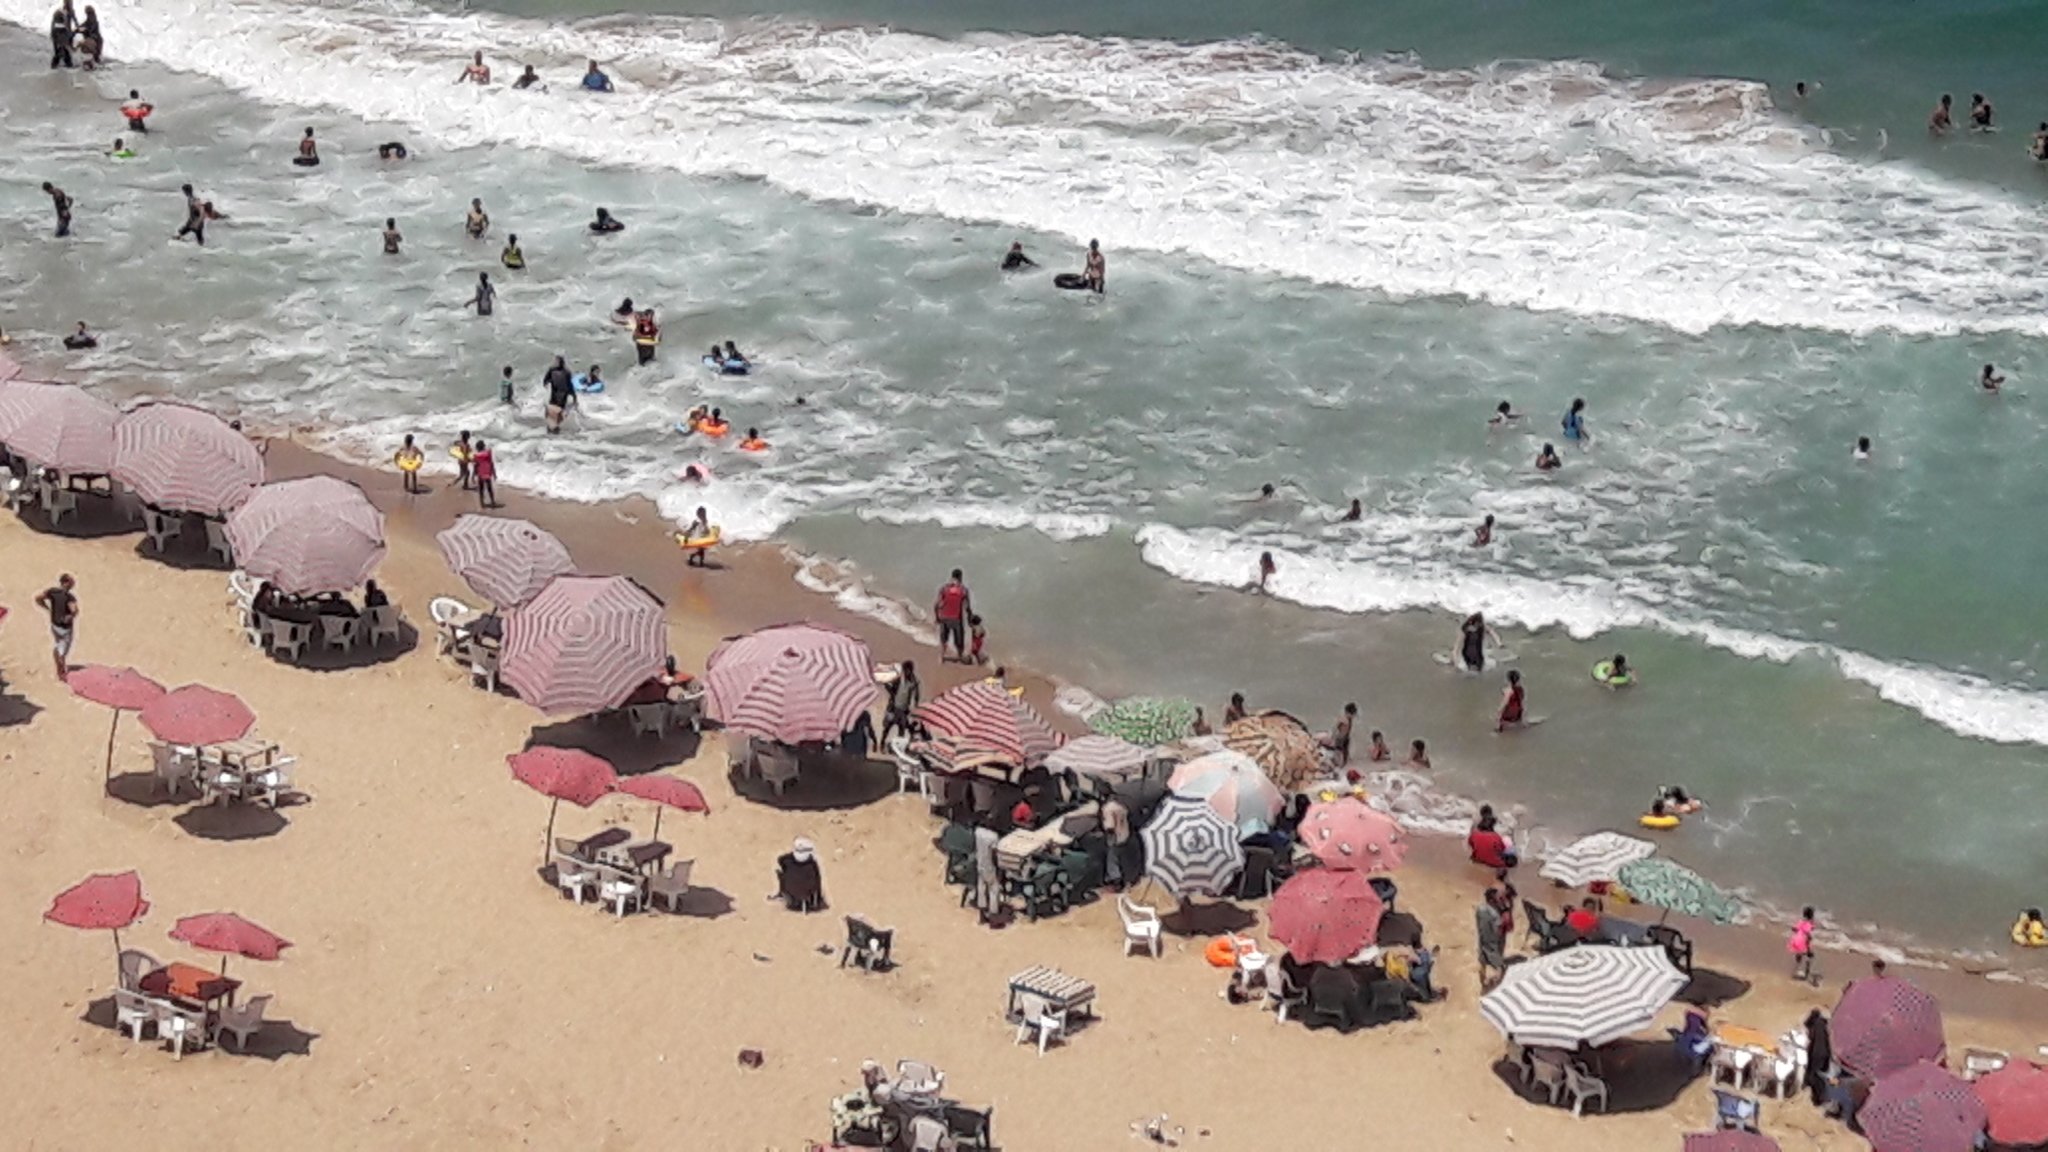 اقبال كبير على الشواطئ و المتنزهات بالاسكندرية لليوم الثالث من عيد الاضحى (4)